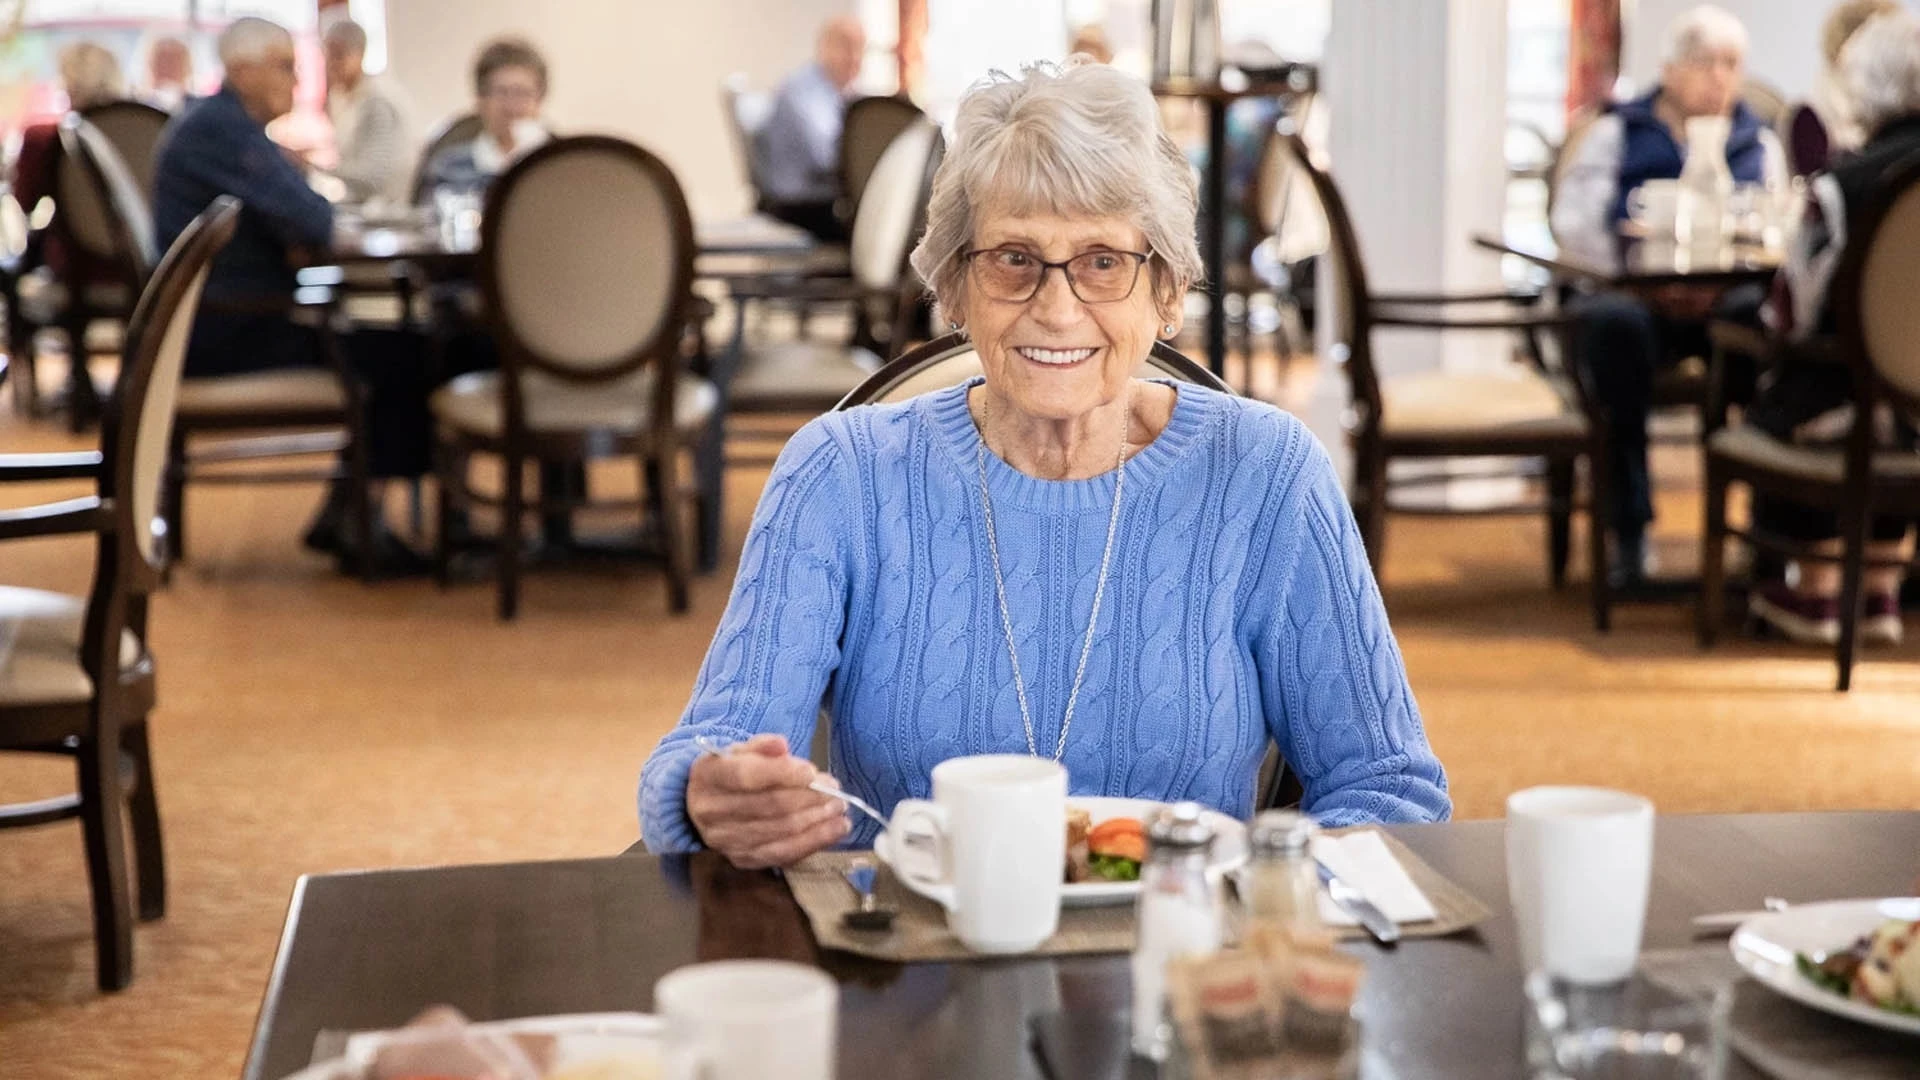 senior lady eating at a table smiling at the camera